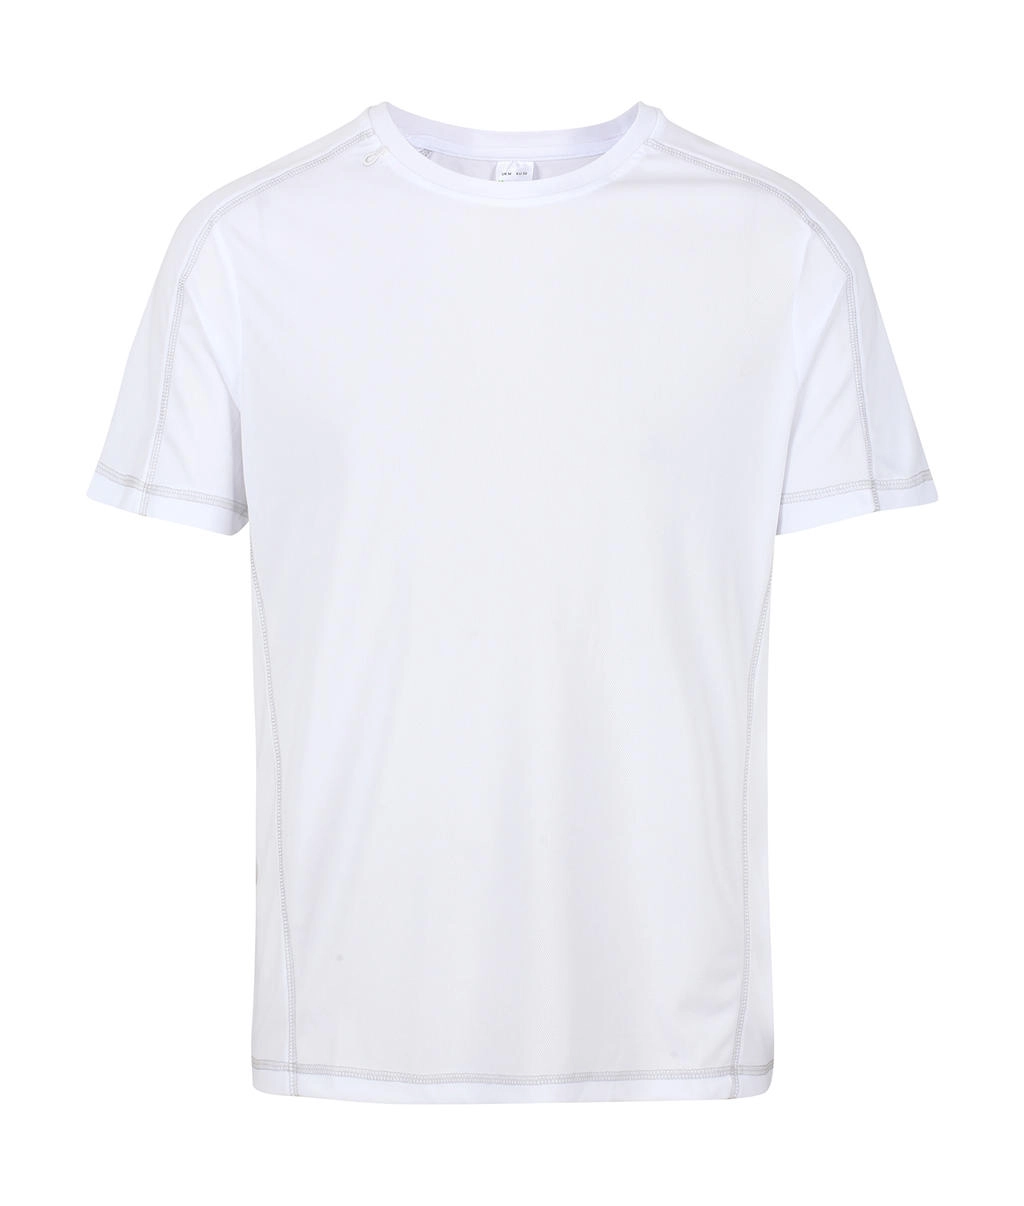 Beijing T-Shirt zum Besticken und Bedrucken in der Farbe White/White mit Ihren Logo, Schriftzug oder Motiv.